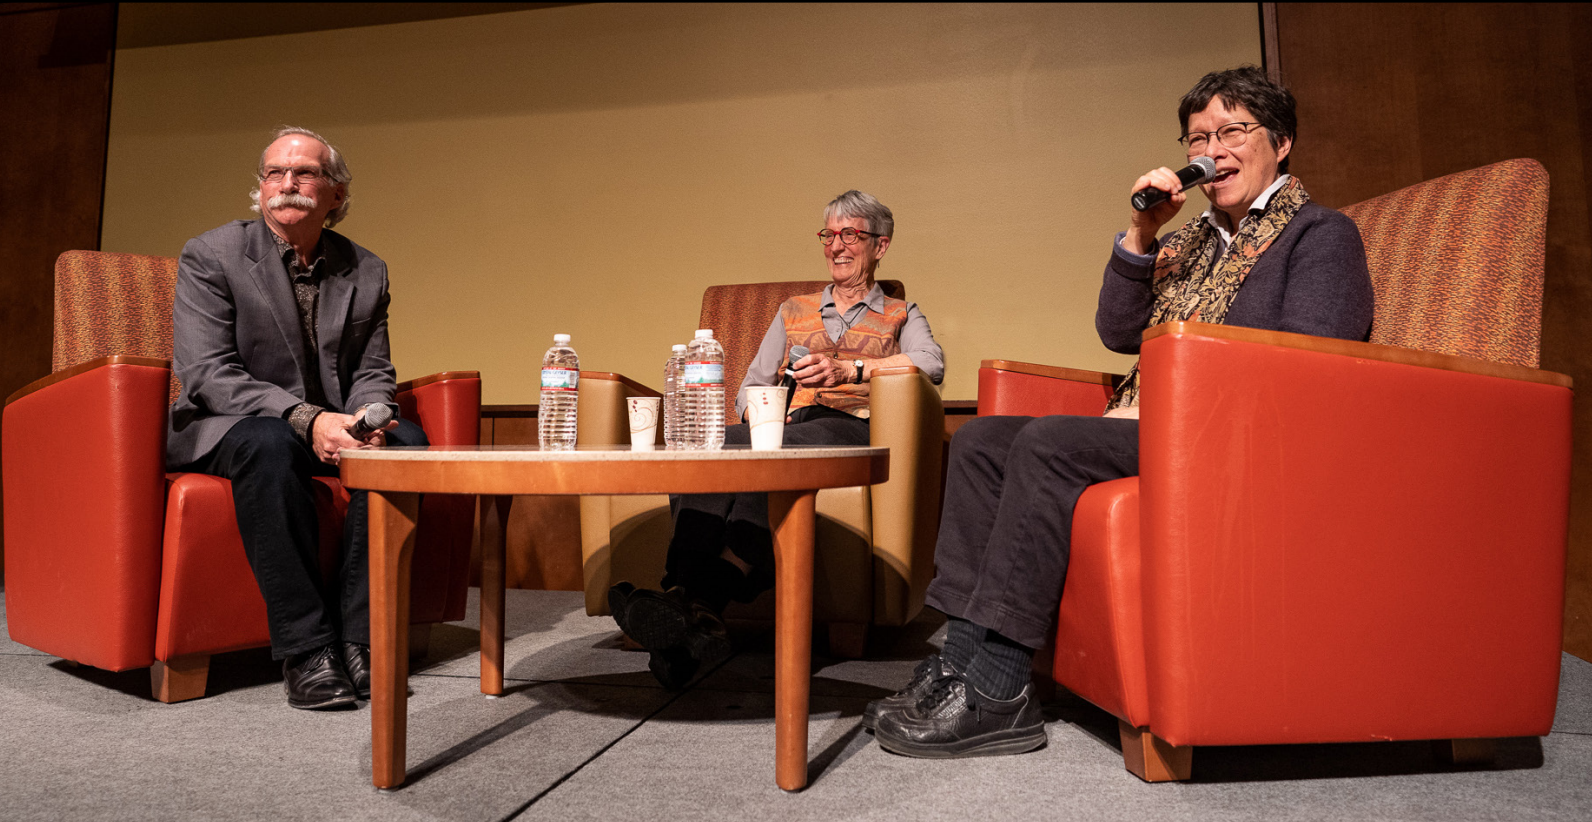 Грегг Митман, Донна Харауэй и&nbsp;Анна Цзин отвечают на&nbsp;вопросы аудитории после обсуждения плантациоцена в&nbsp;Висконсинском университете в&nbsp;Мадисоне 18 апреля 2019&nbsp;года. Фото: Ромуло Уэда.